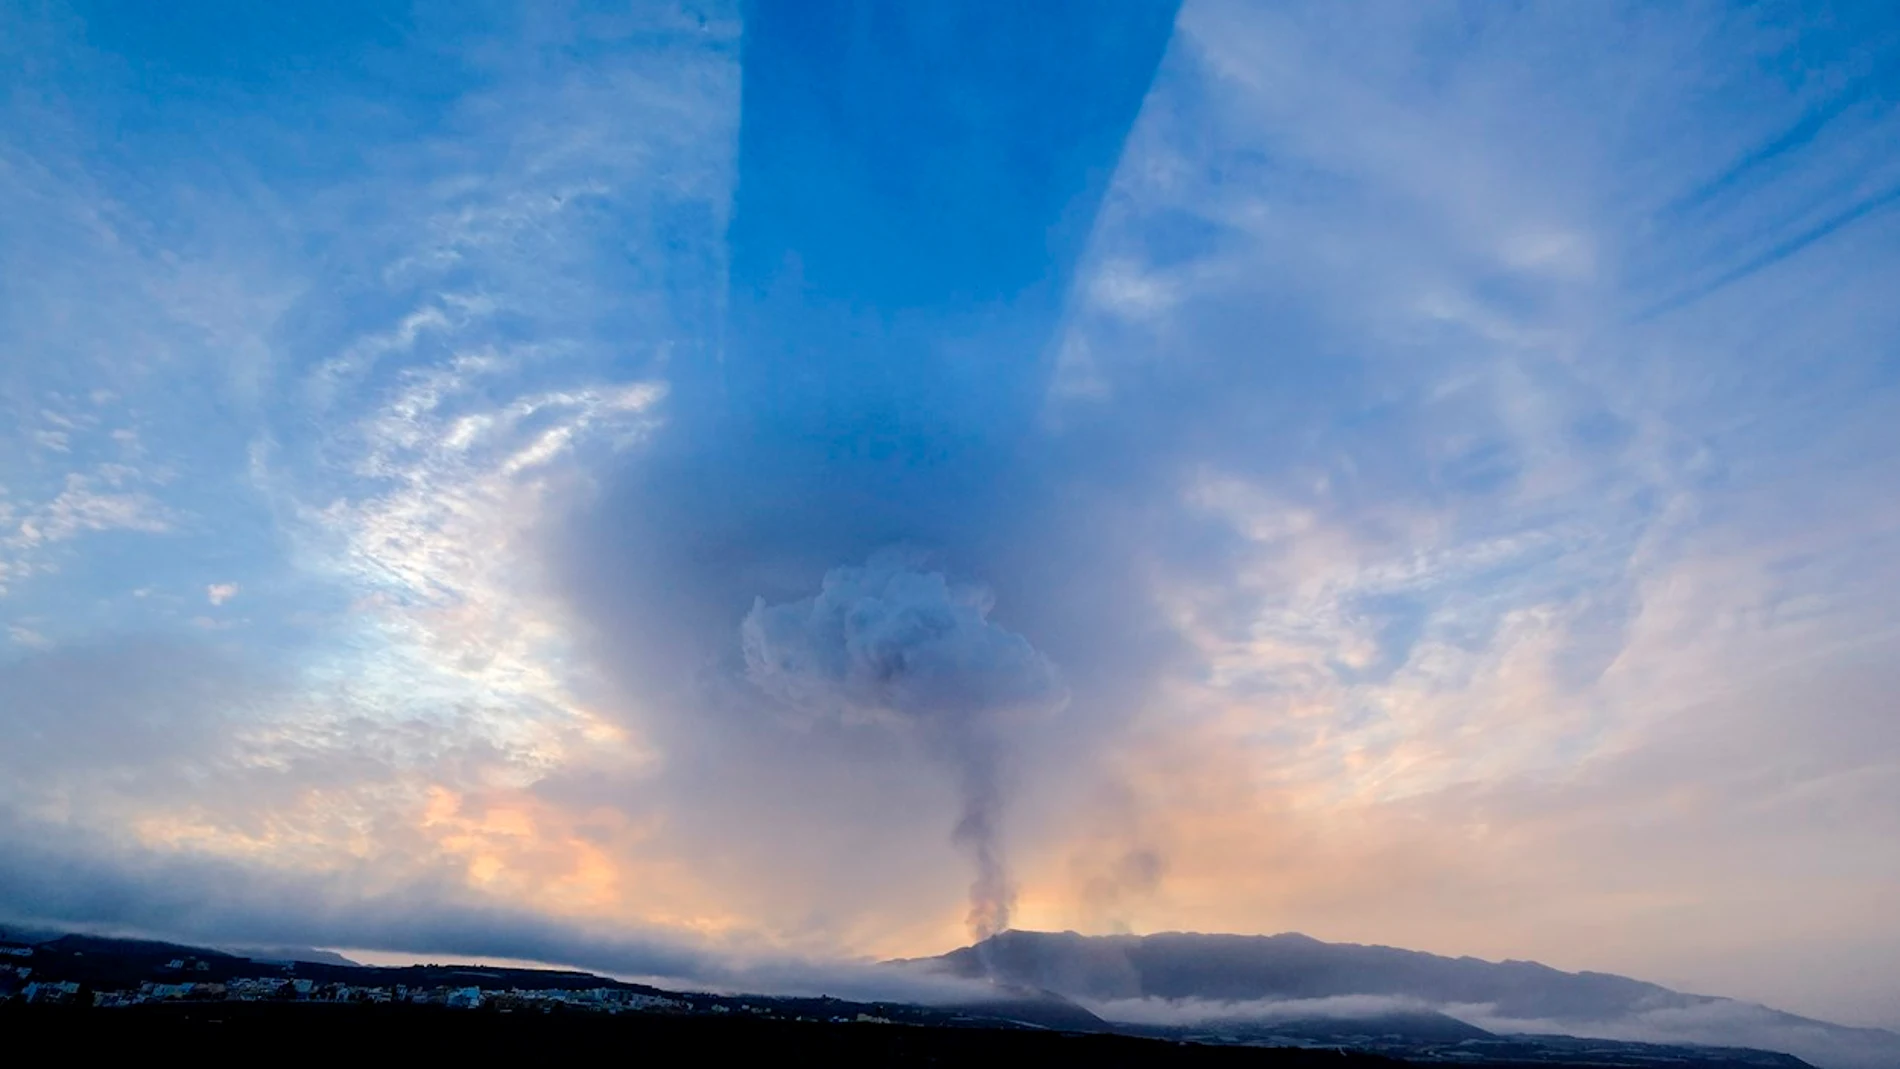 Columnas de humo y cenizas emergen del volcán en una imagen tomada este martes desde la localidad de Tazacorte, en la isla de La Palma